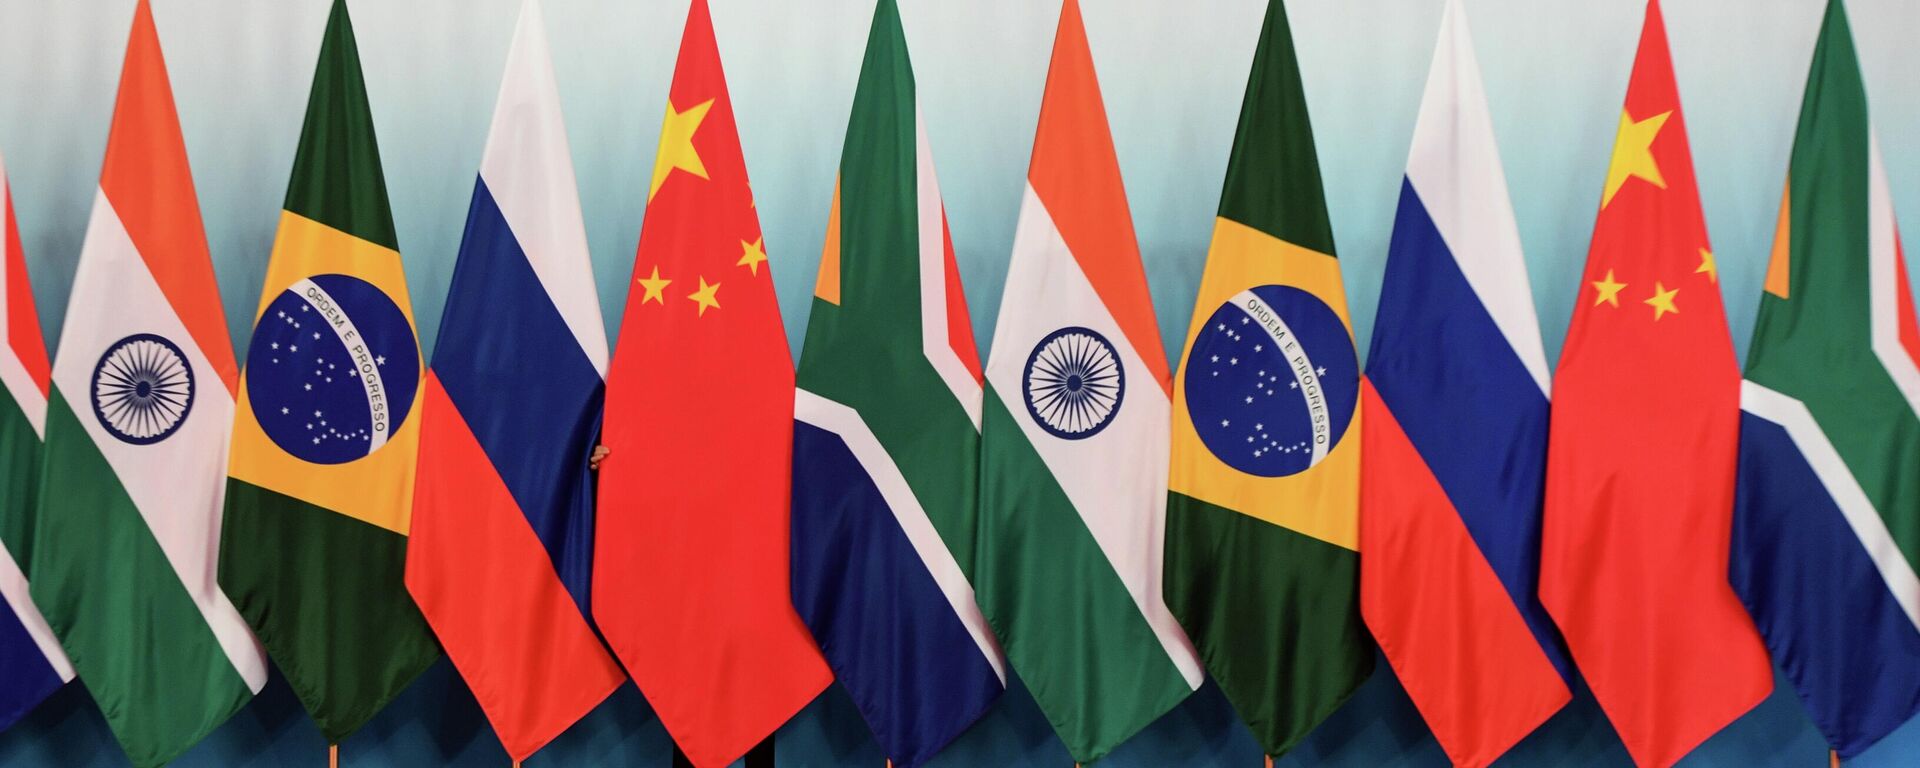 Cờ của các nước tham gia Cuộc họp của các nhà lãnh đạo BRICS - Sputnik Việt Nam, 1920, 07.11.2022